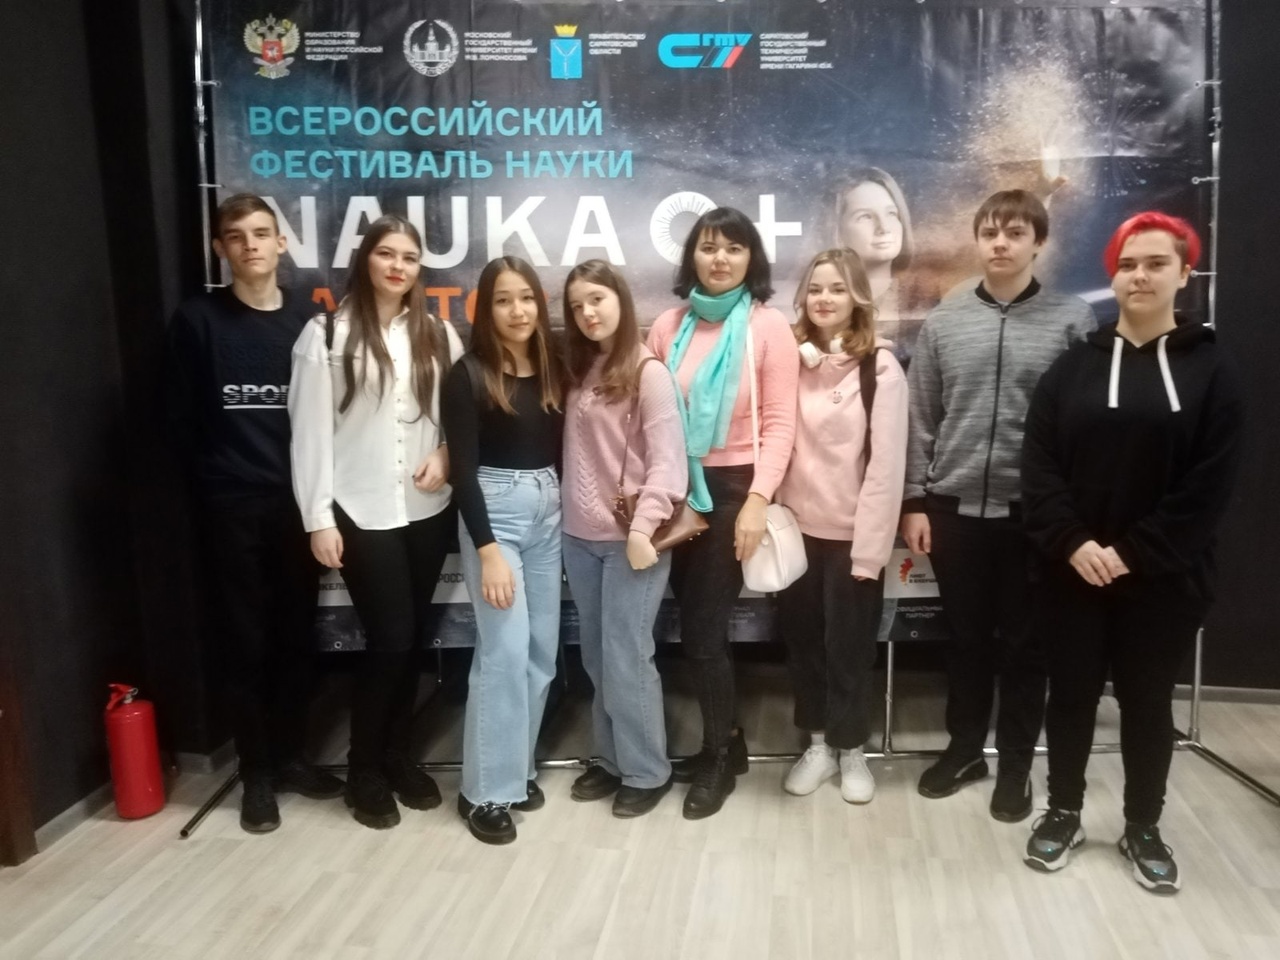 Учащиеся 8-11 классов приняли участие во Всероссийском фестивале науки, который прошёл в Энгельсском технологическом институте СГТУ..